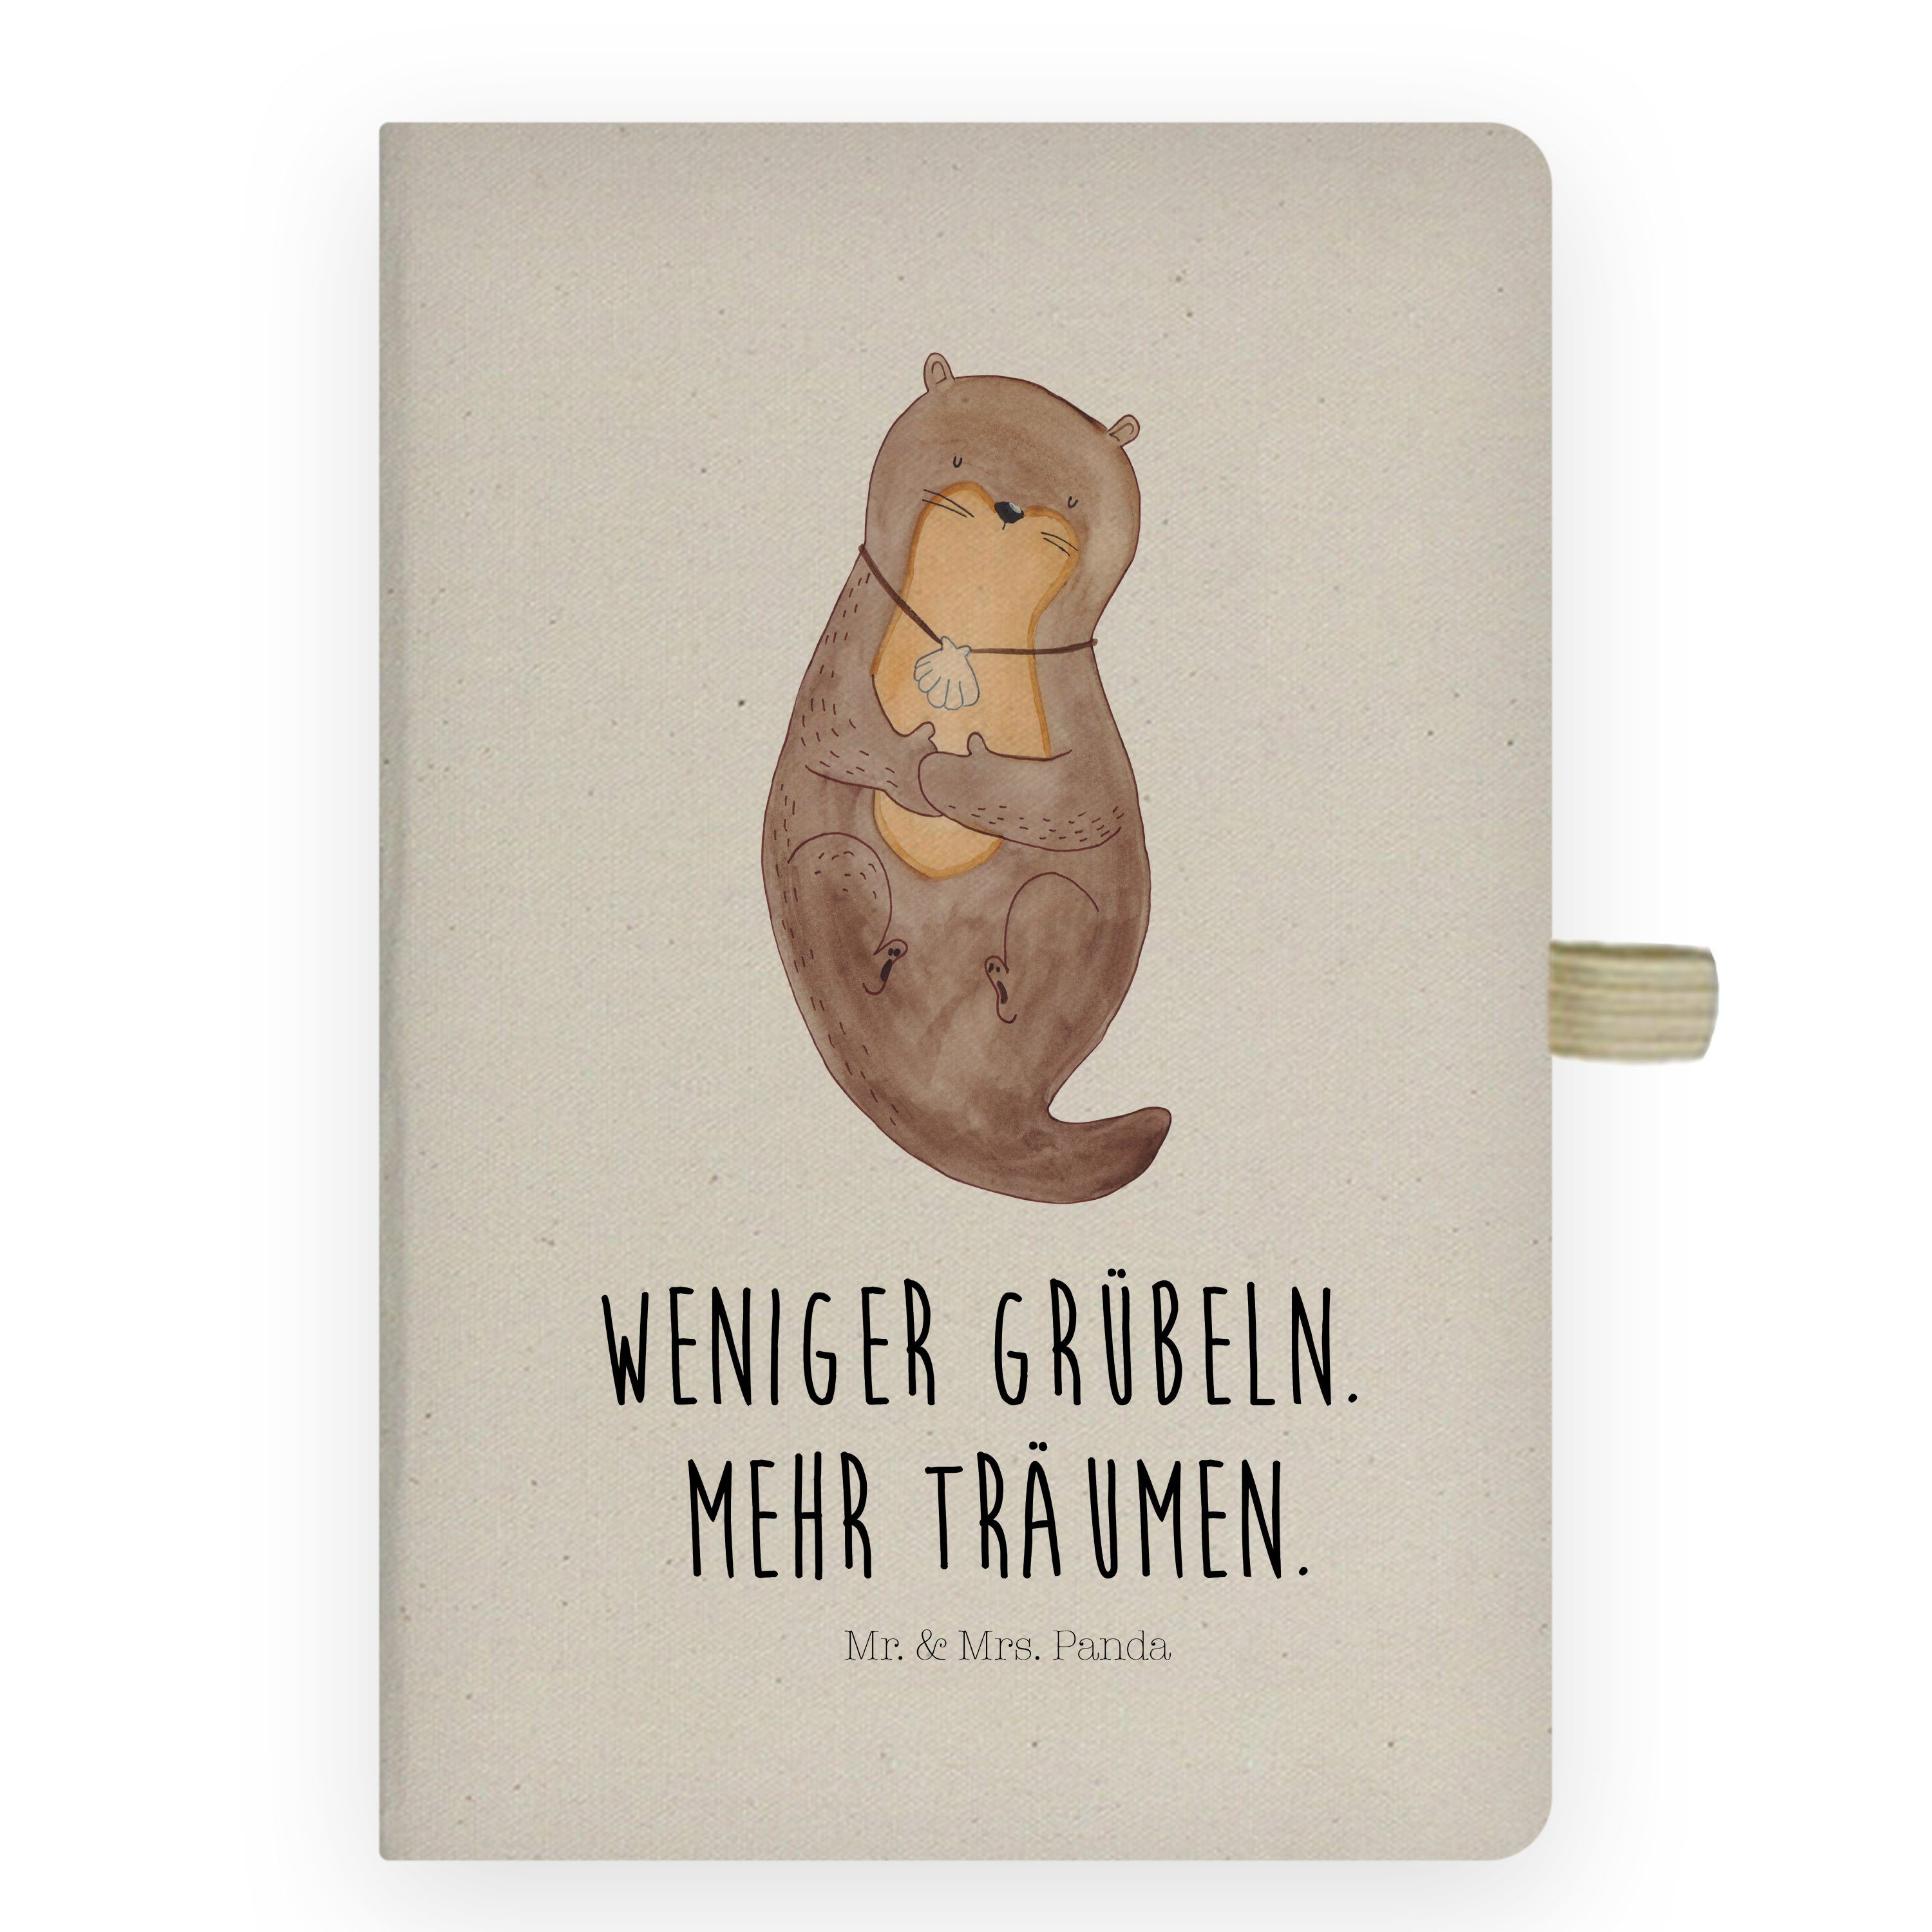 Mr. & Mrs. Panda Notizbuch Otter mit Muschelmedaillon - Transparent - Geschenk, Otterliebe, träu Mr. & Mrs. Panda